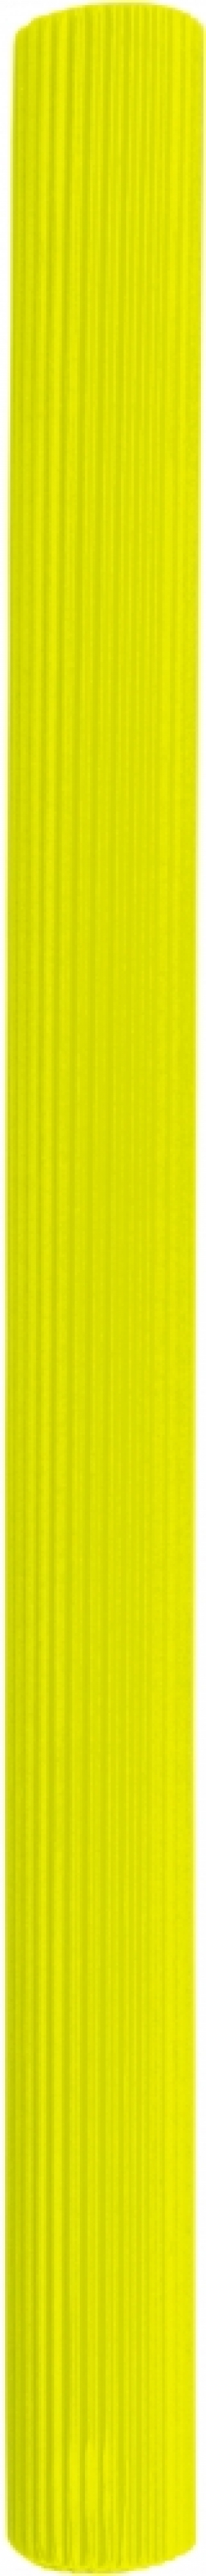 Tektura falista rolka Astrapap B2 50x70 cm - żółta